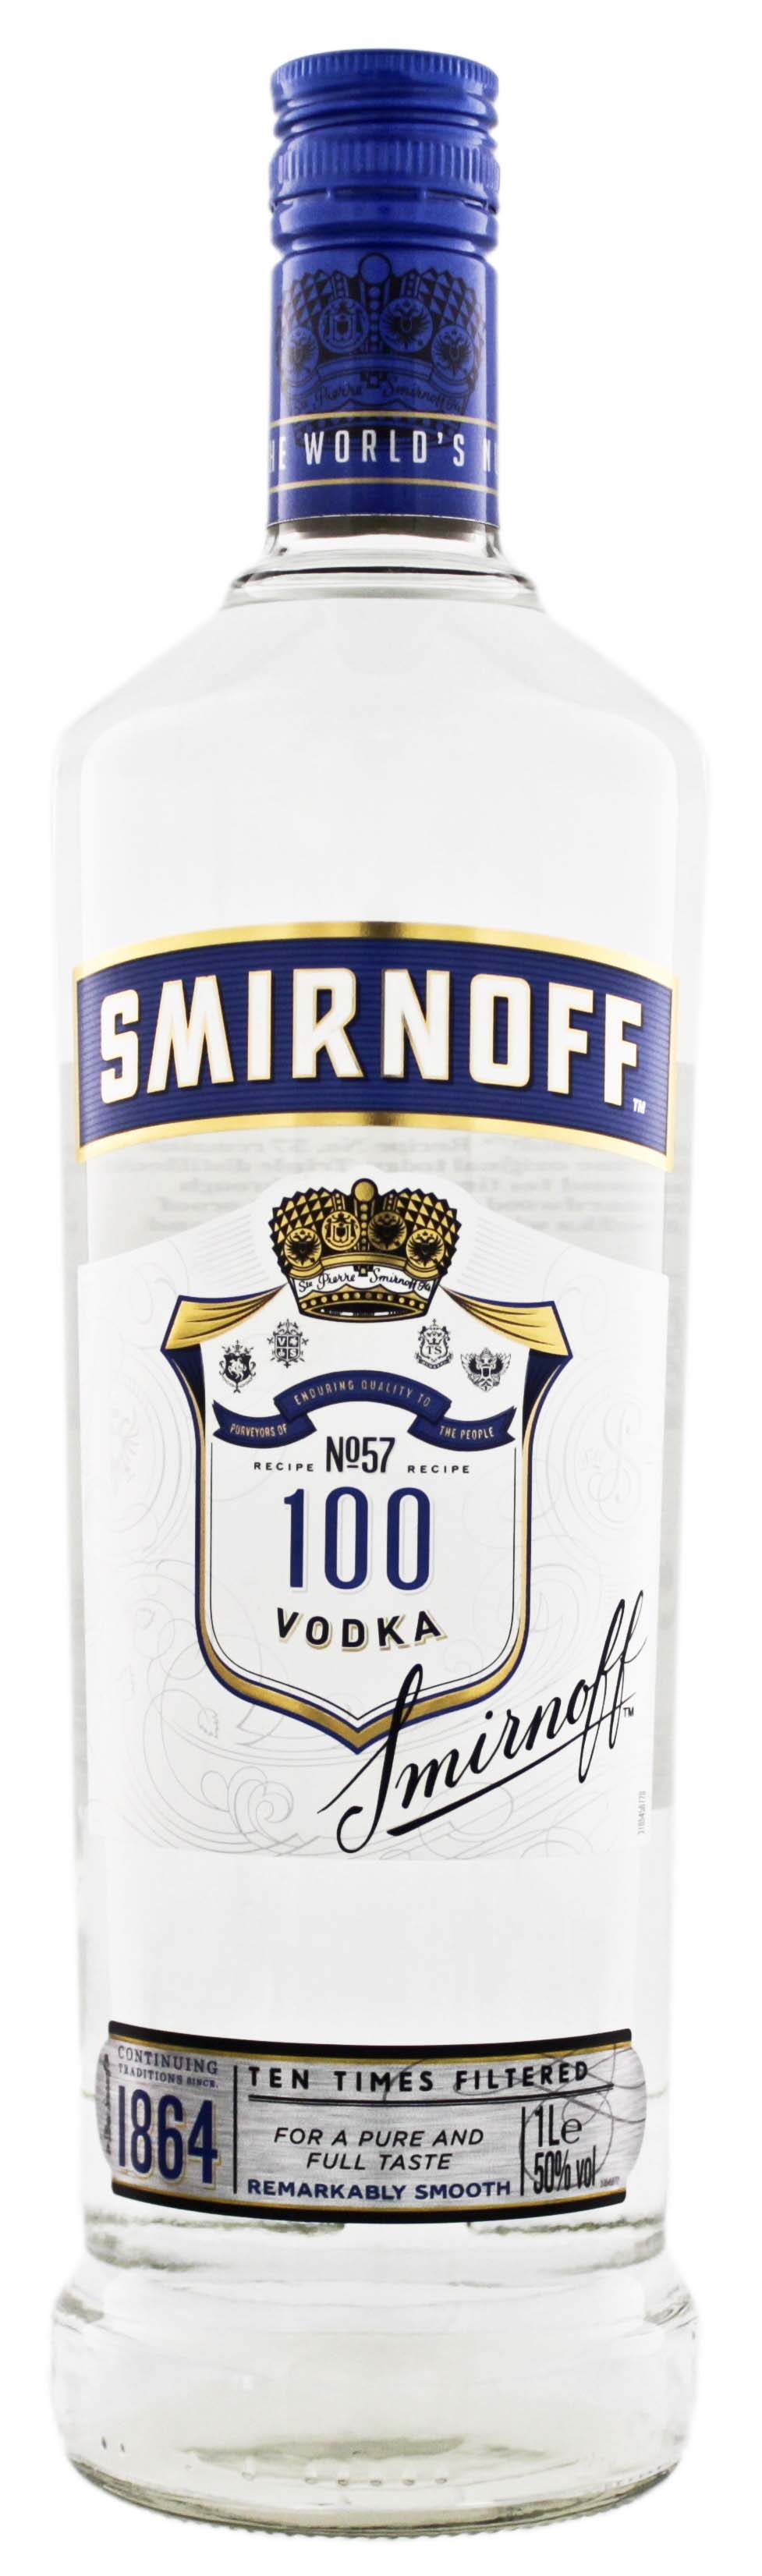 Smirnoff Vodka Blue Label jetzt & Wodka Online kaufen! Shop Spirituosen